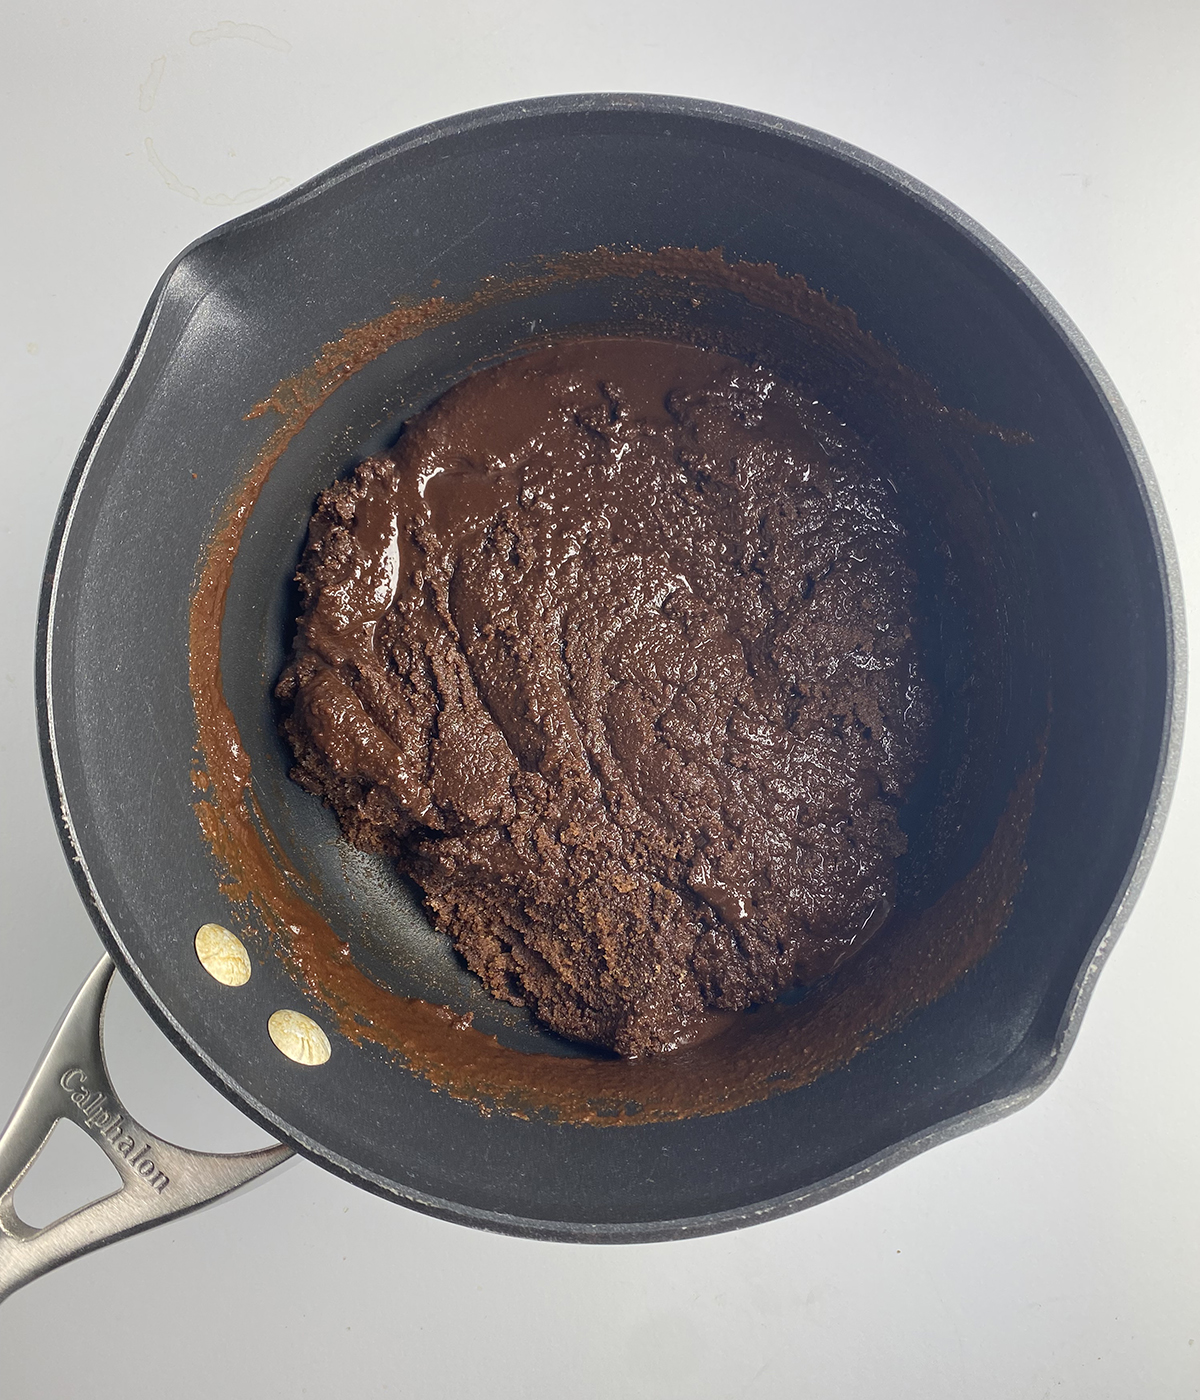 Pot full of saucepan brownie batter.